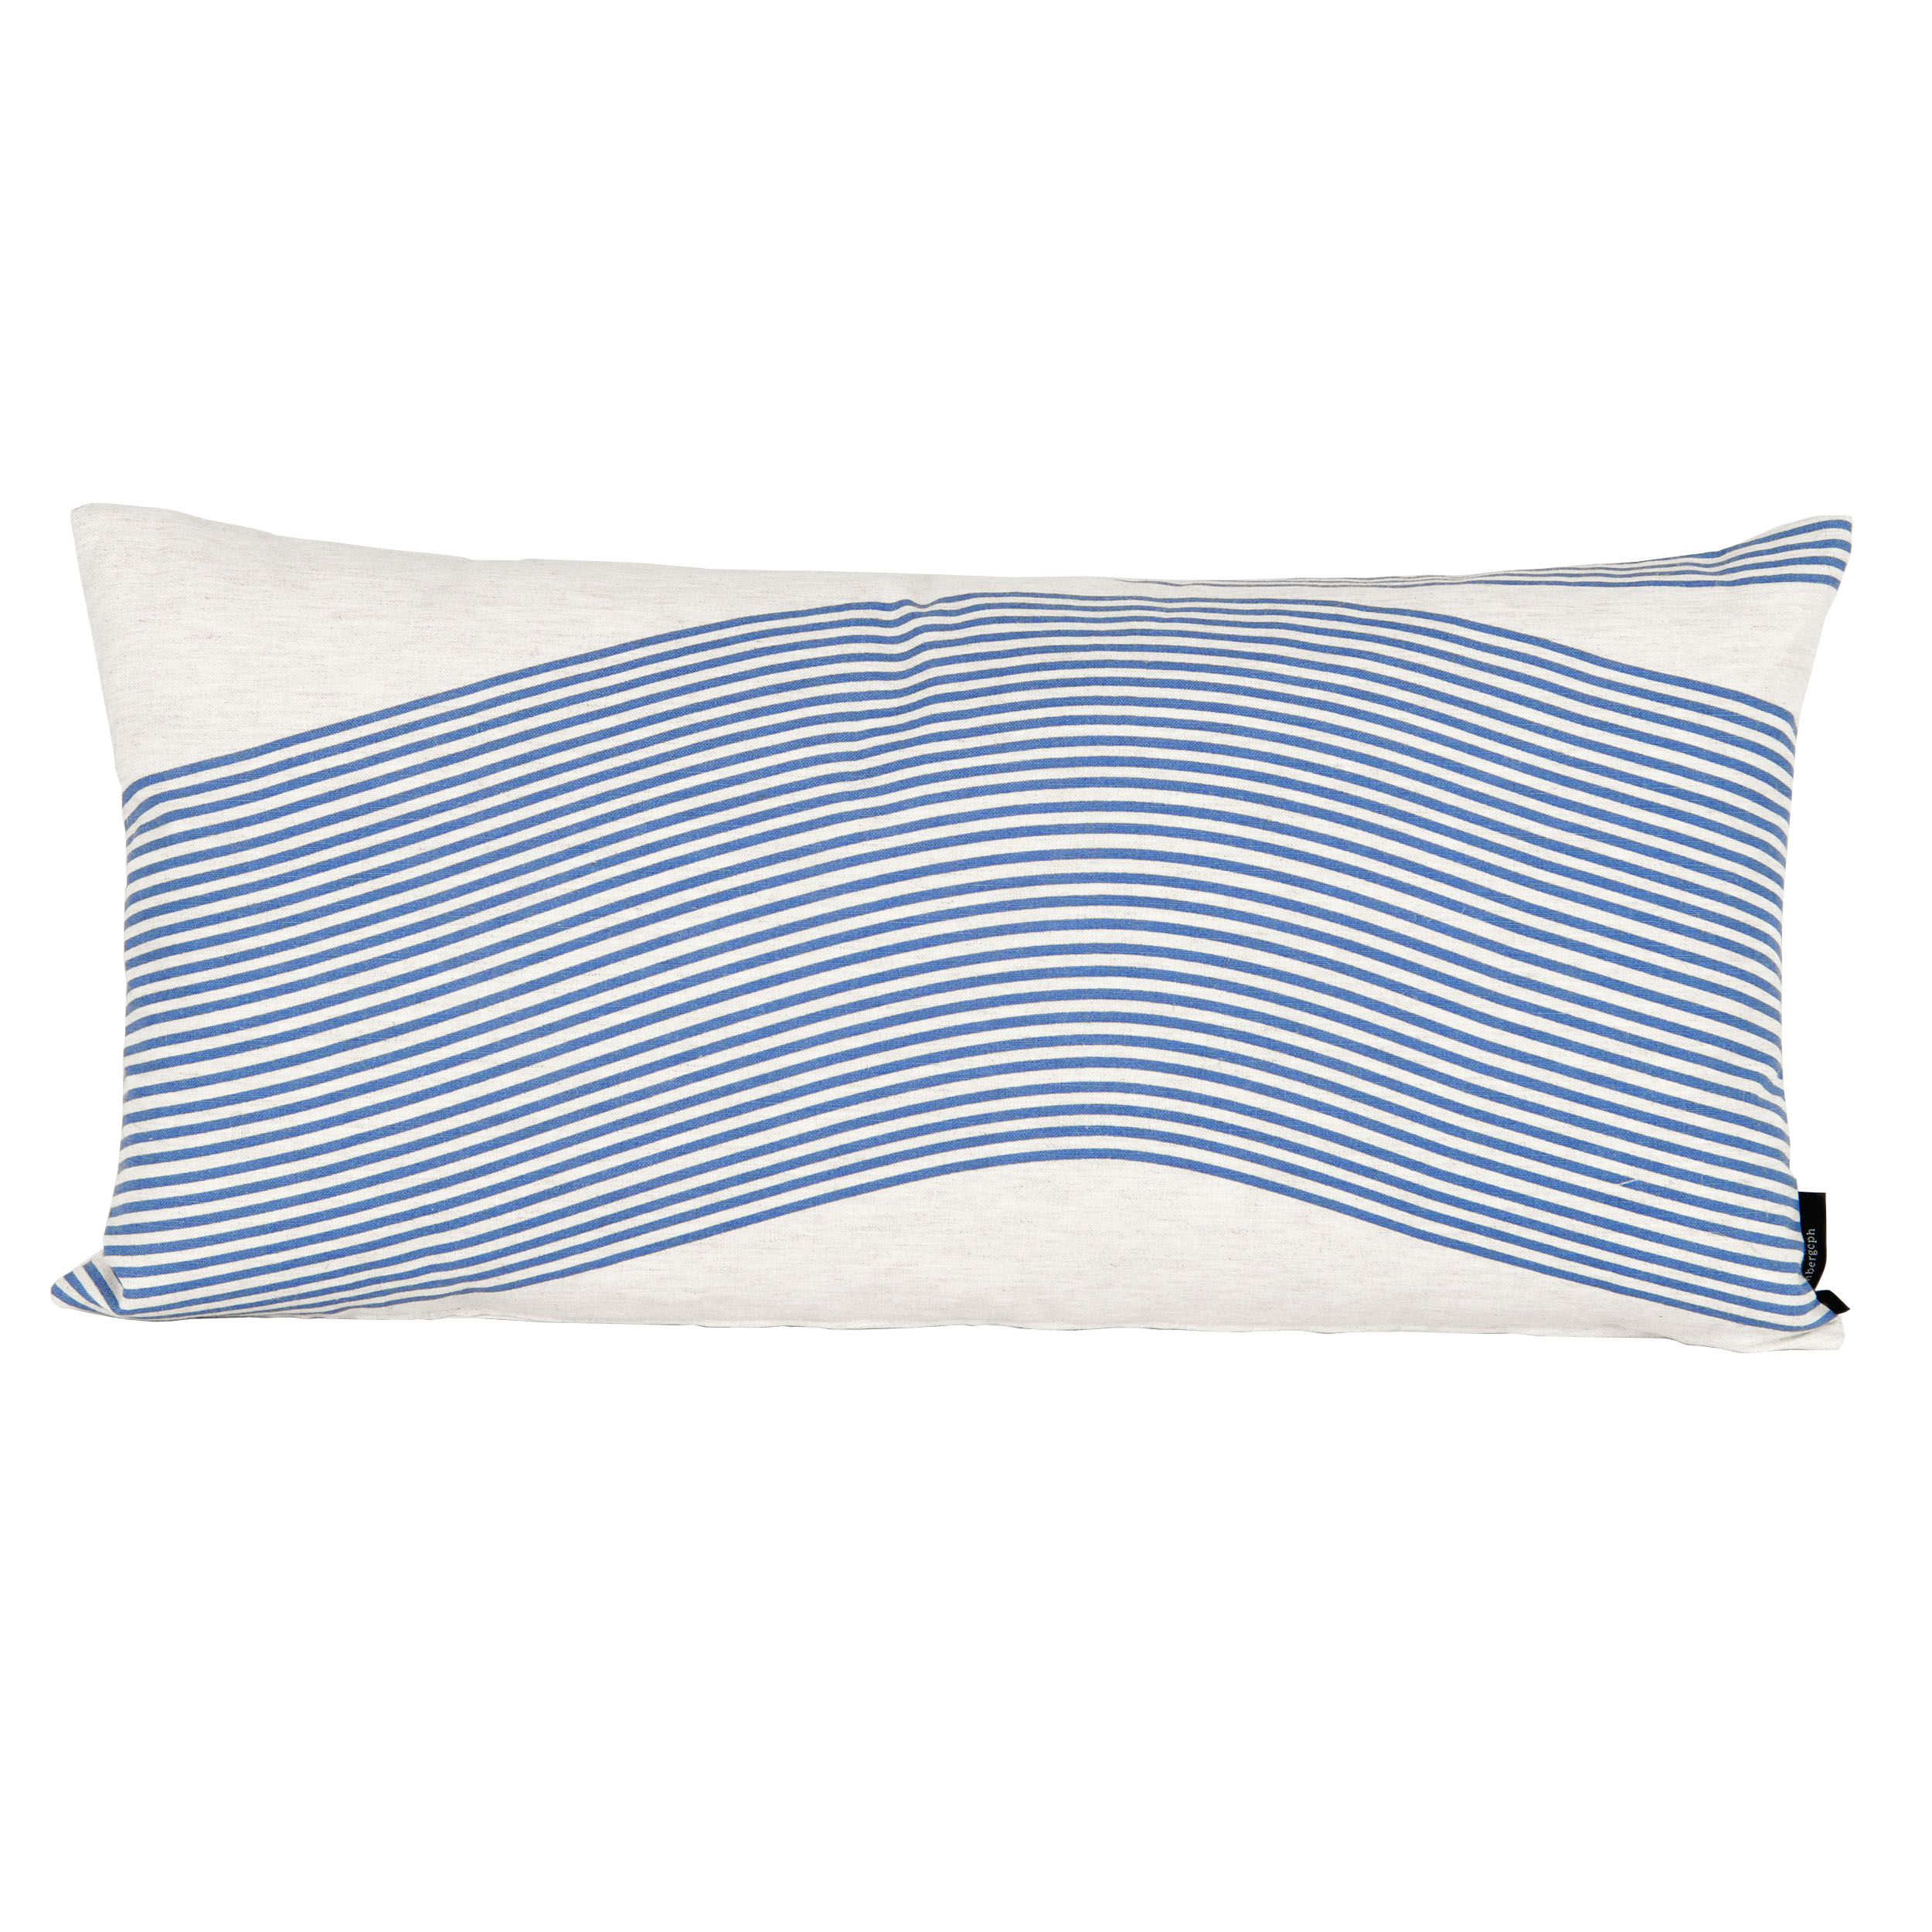 Rectangular cushion in River pattern, design Anne Rosenberg, RosenbergCph